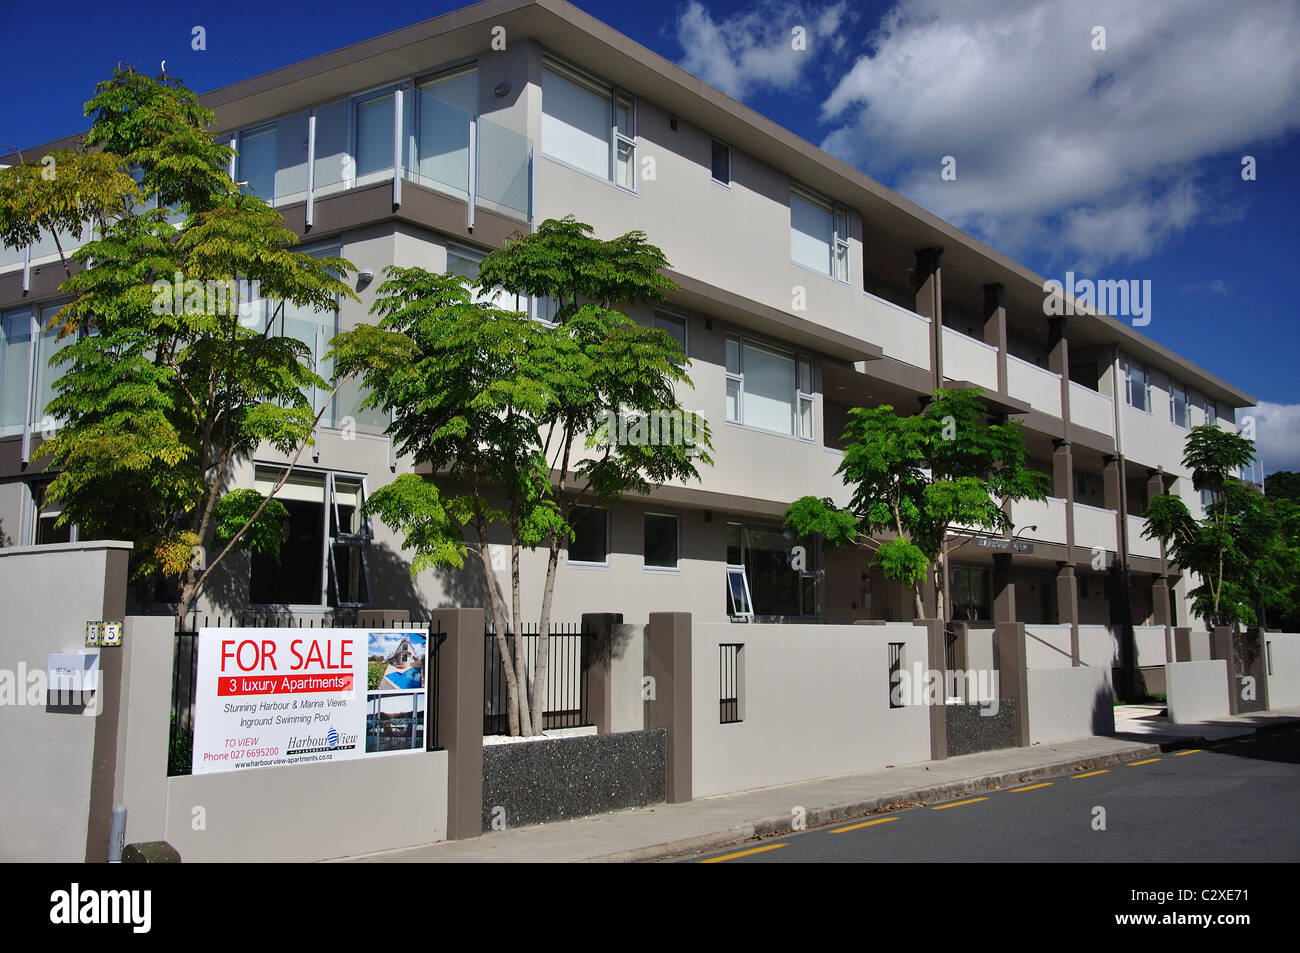 Porto di lusso appartamenti in vendita, Esplanade, Whitianga, Mercurio Bay, Penisola di Coromandel, regione di Waikato, Nuova Zelanda Foto Stock